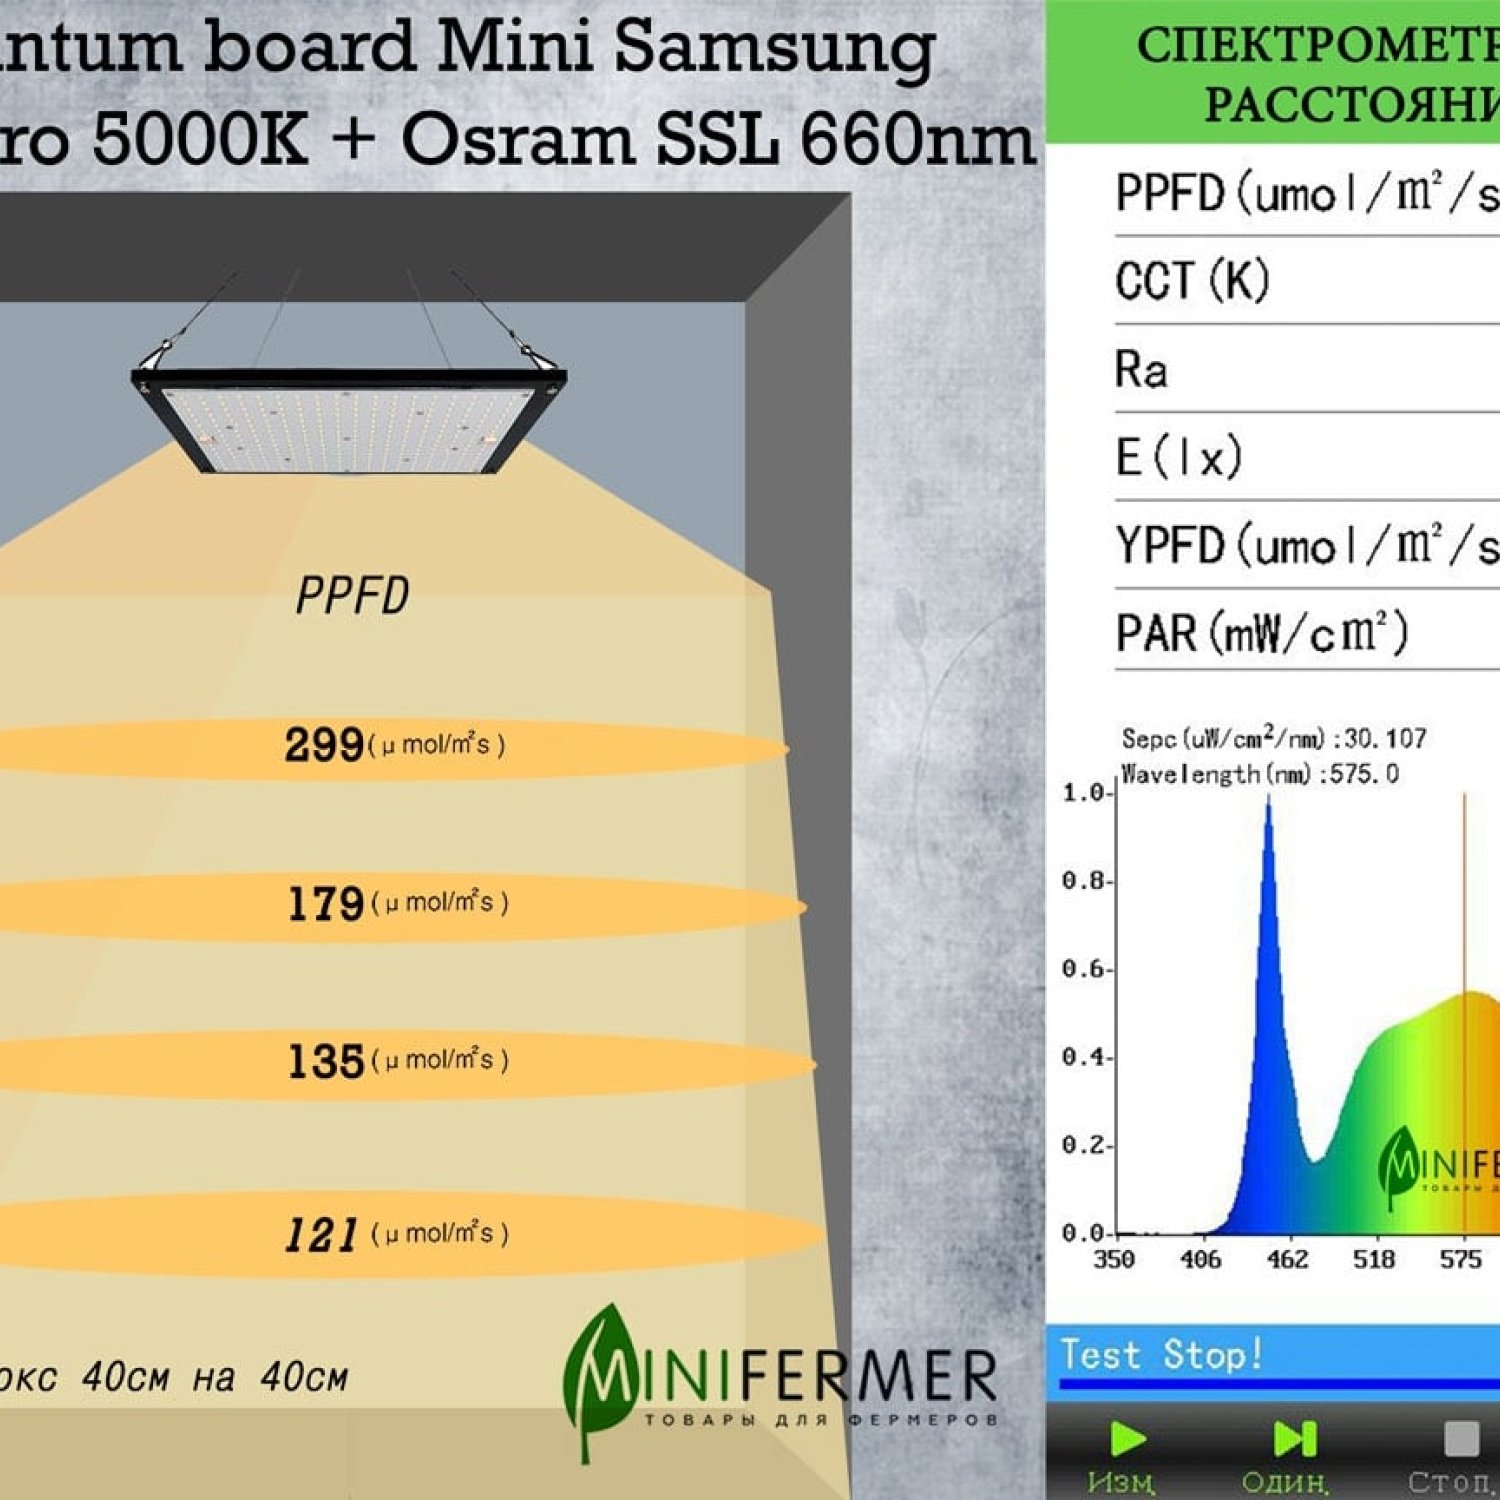 3.5 Quantum board Mini Samsung lm281b+pro 5000K + Osram SSL 660nm